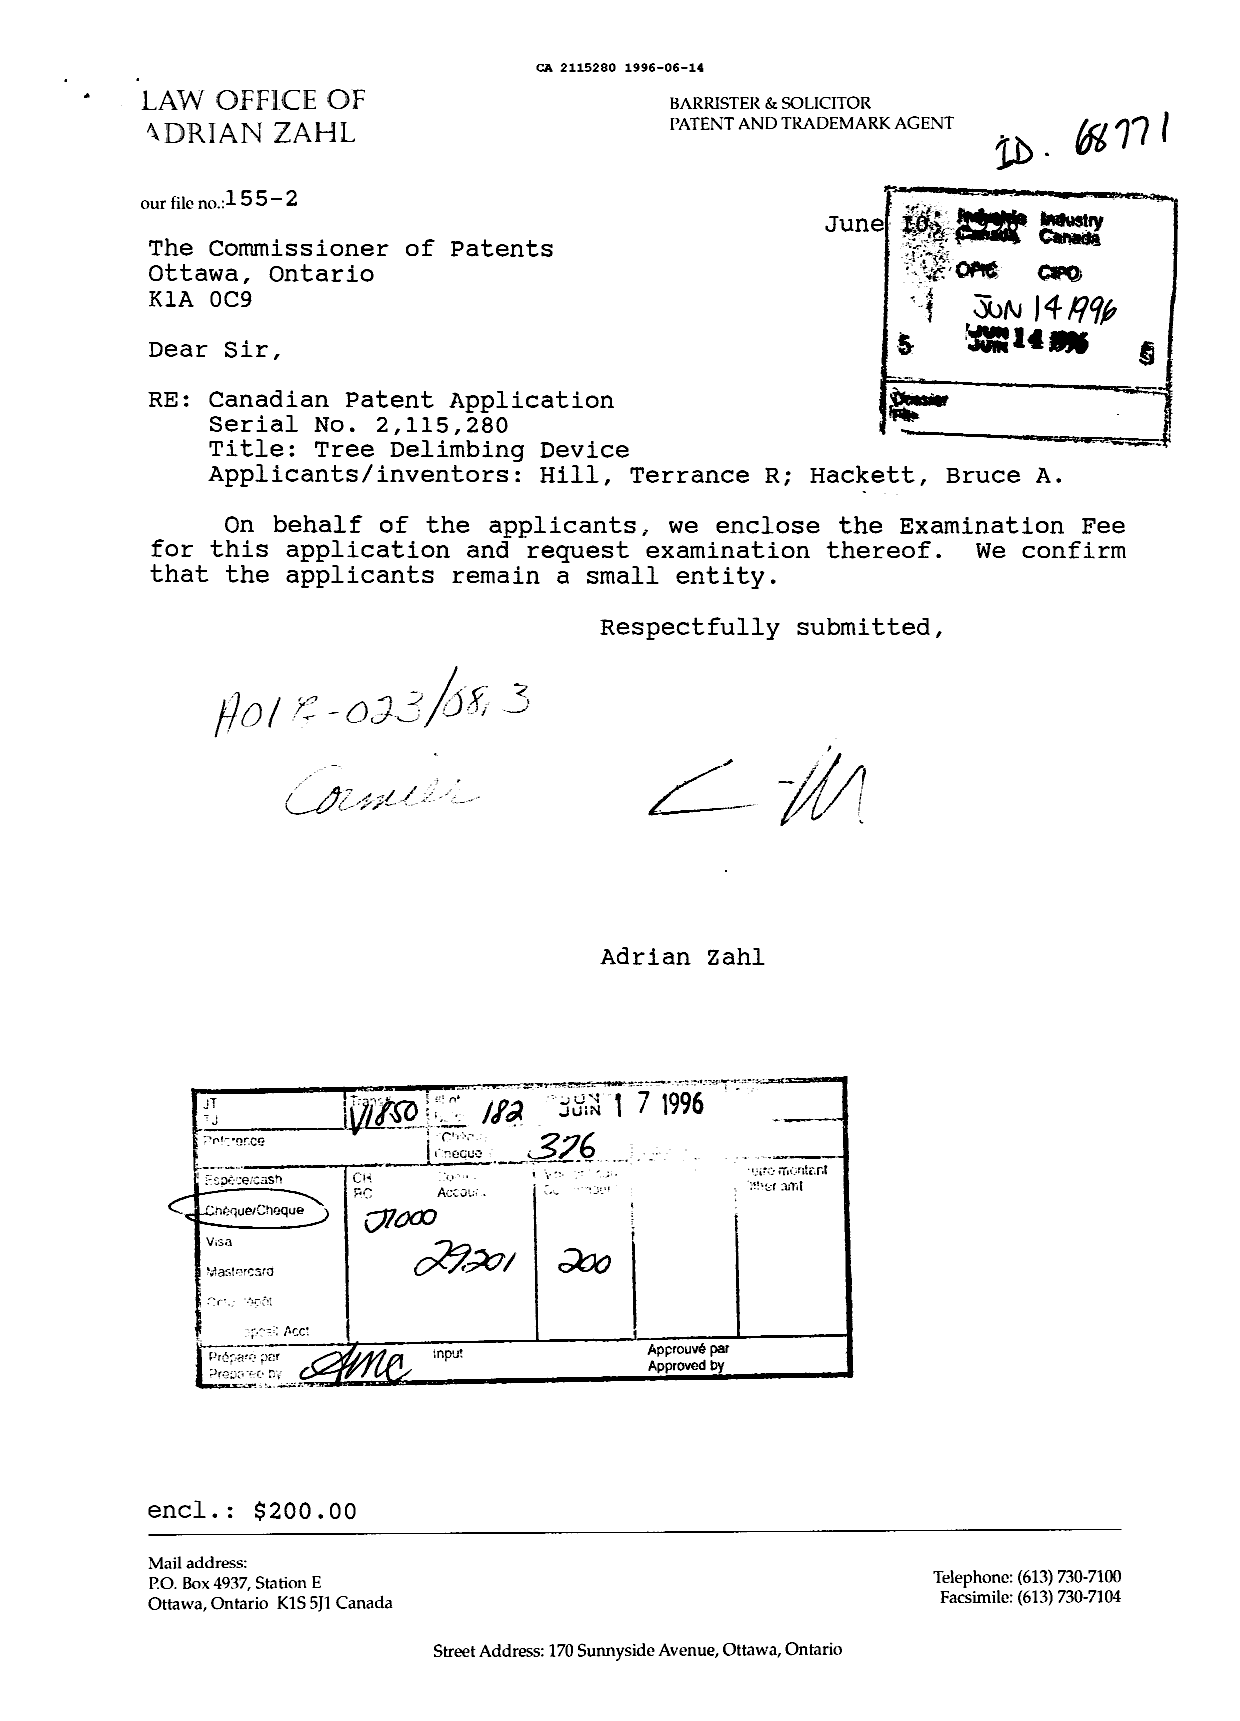 Document de brevet canadien 2115280. Correspondance de la poursuite 19960614. Image 1 de 1